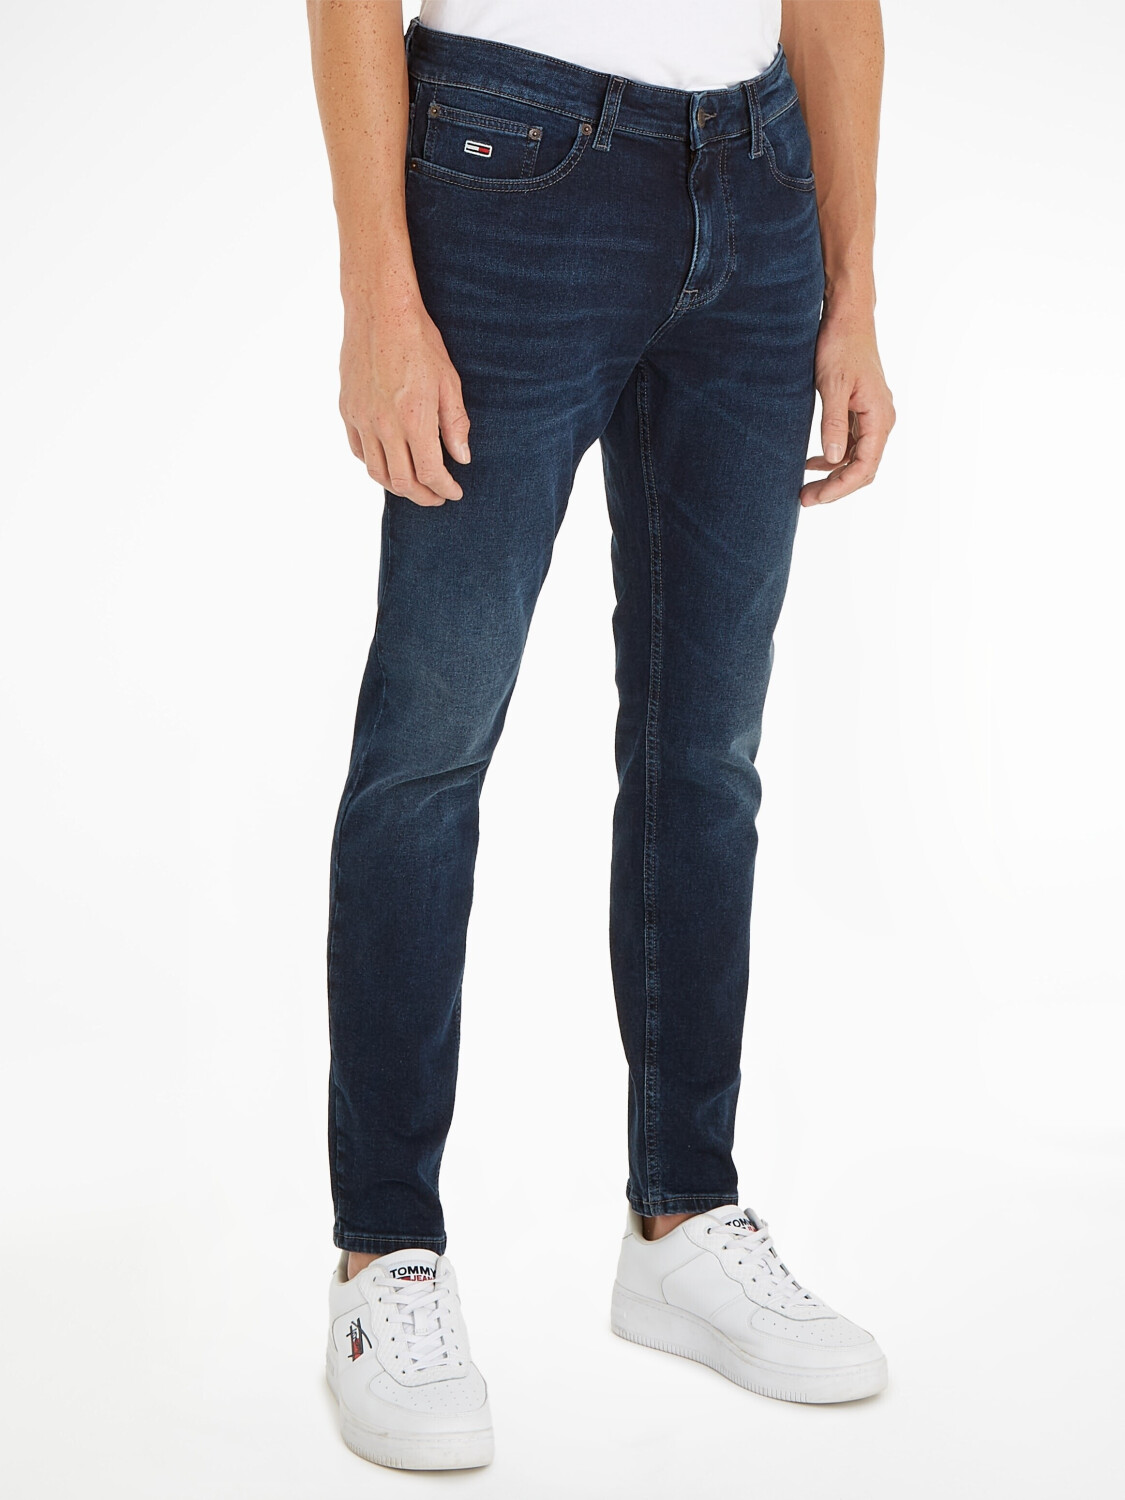 Tommy Hilfiger Austin Slim Tapered Jeans (DM0DM18141) dark denim ab 63,99 €  | Preisvergleich bei